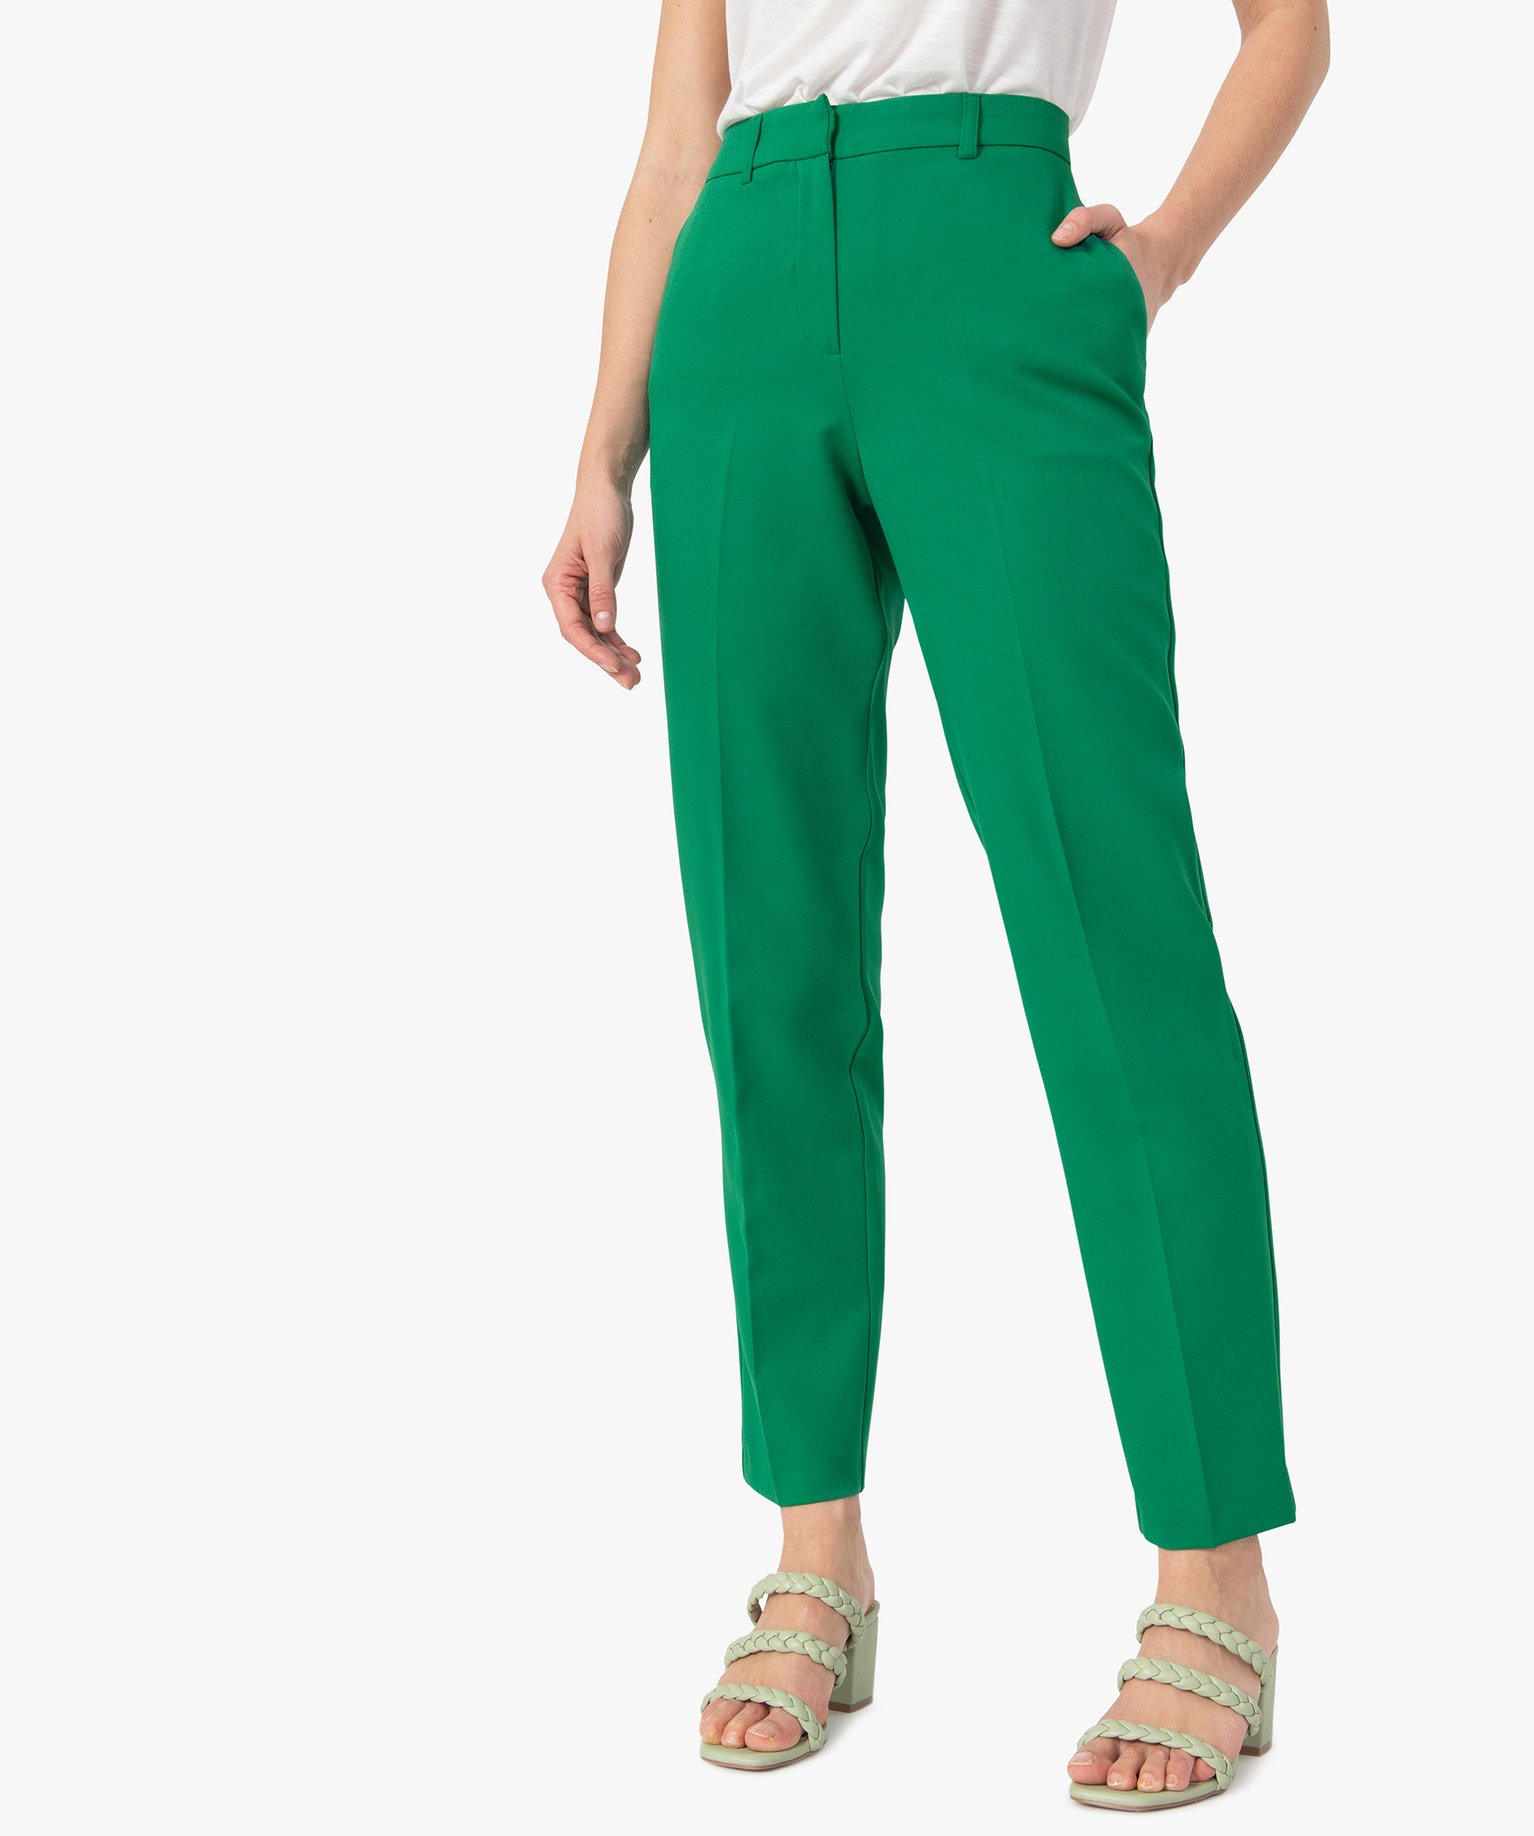 pantalon de tailleur femme vert pantalons